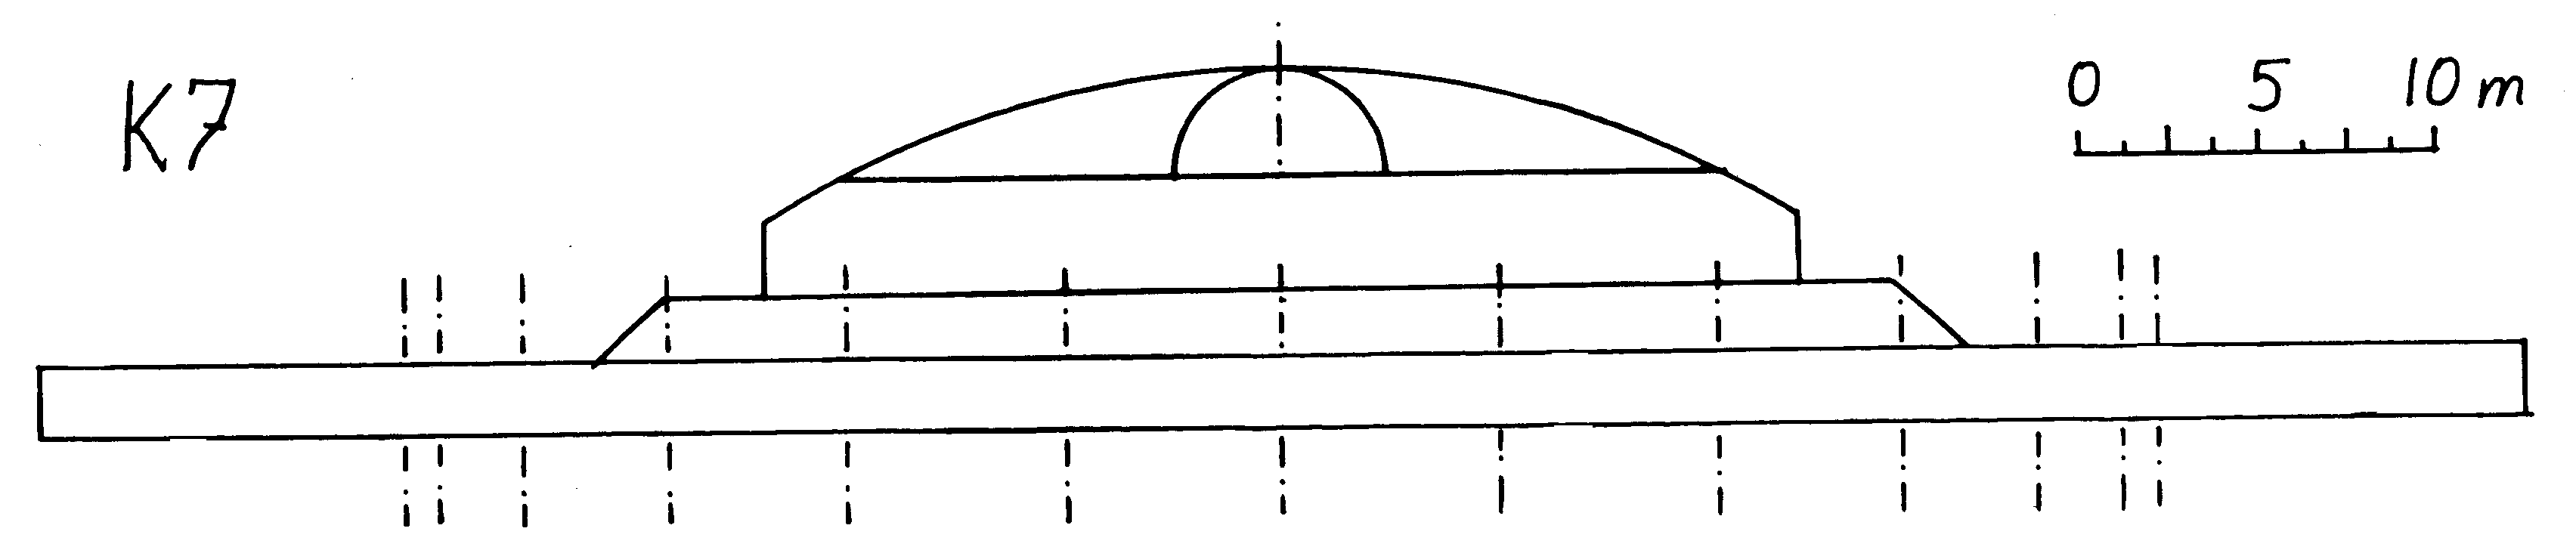 Fig. G24(K7)